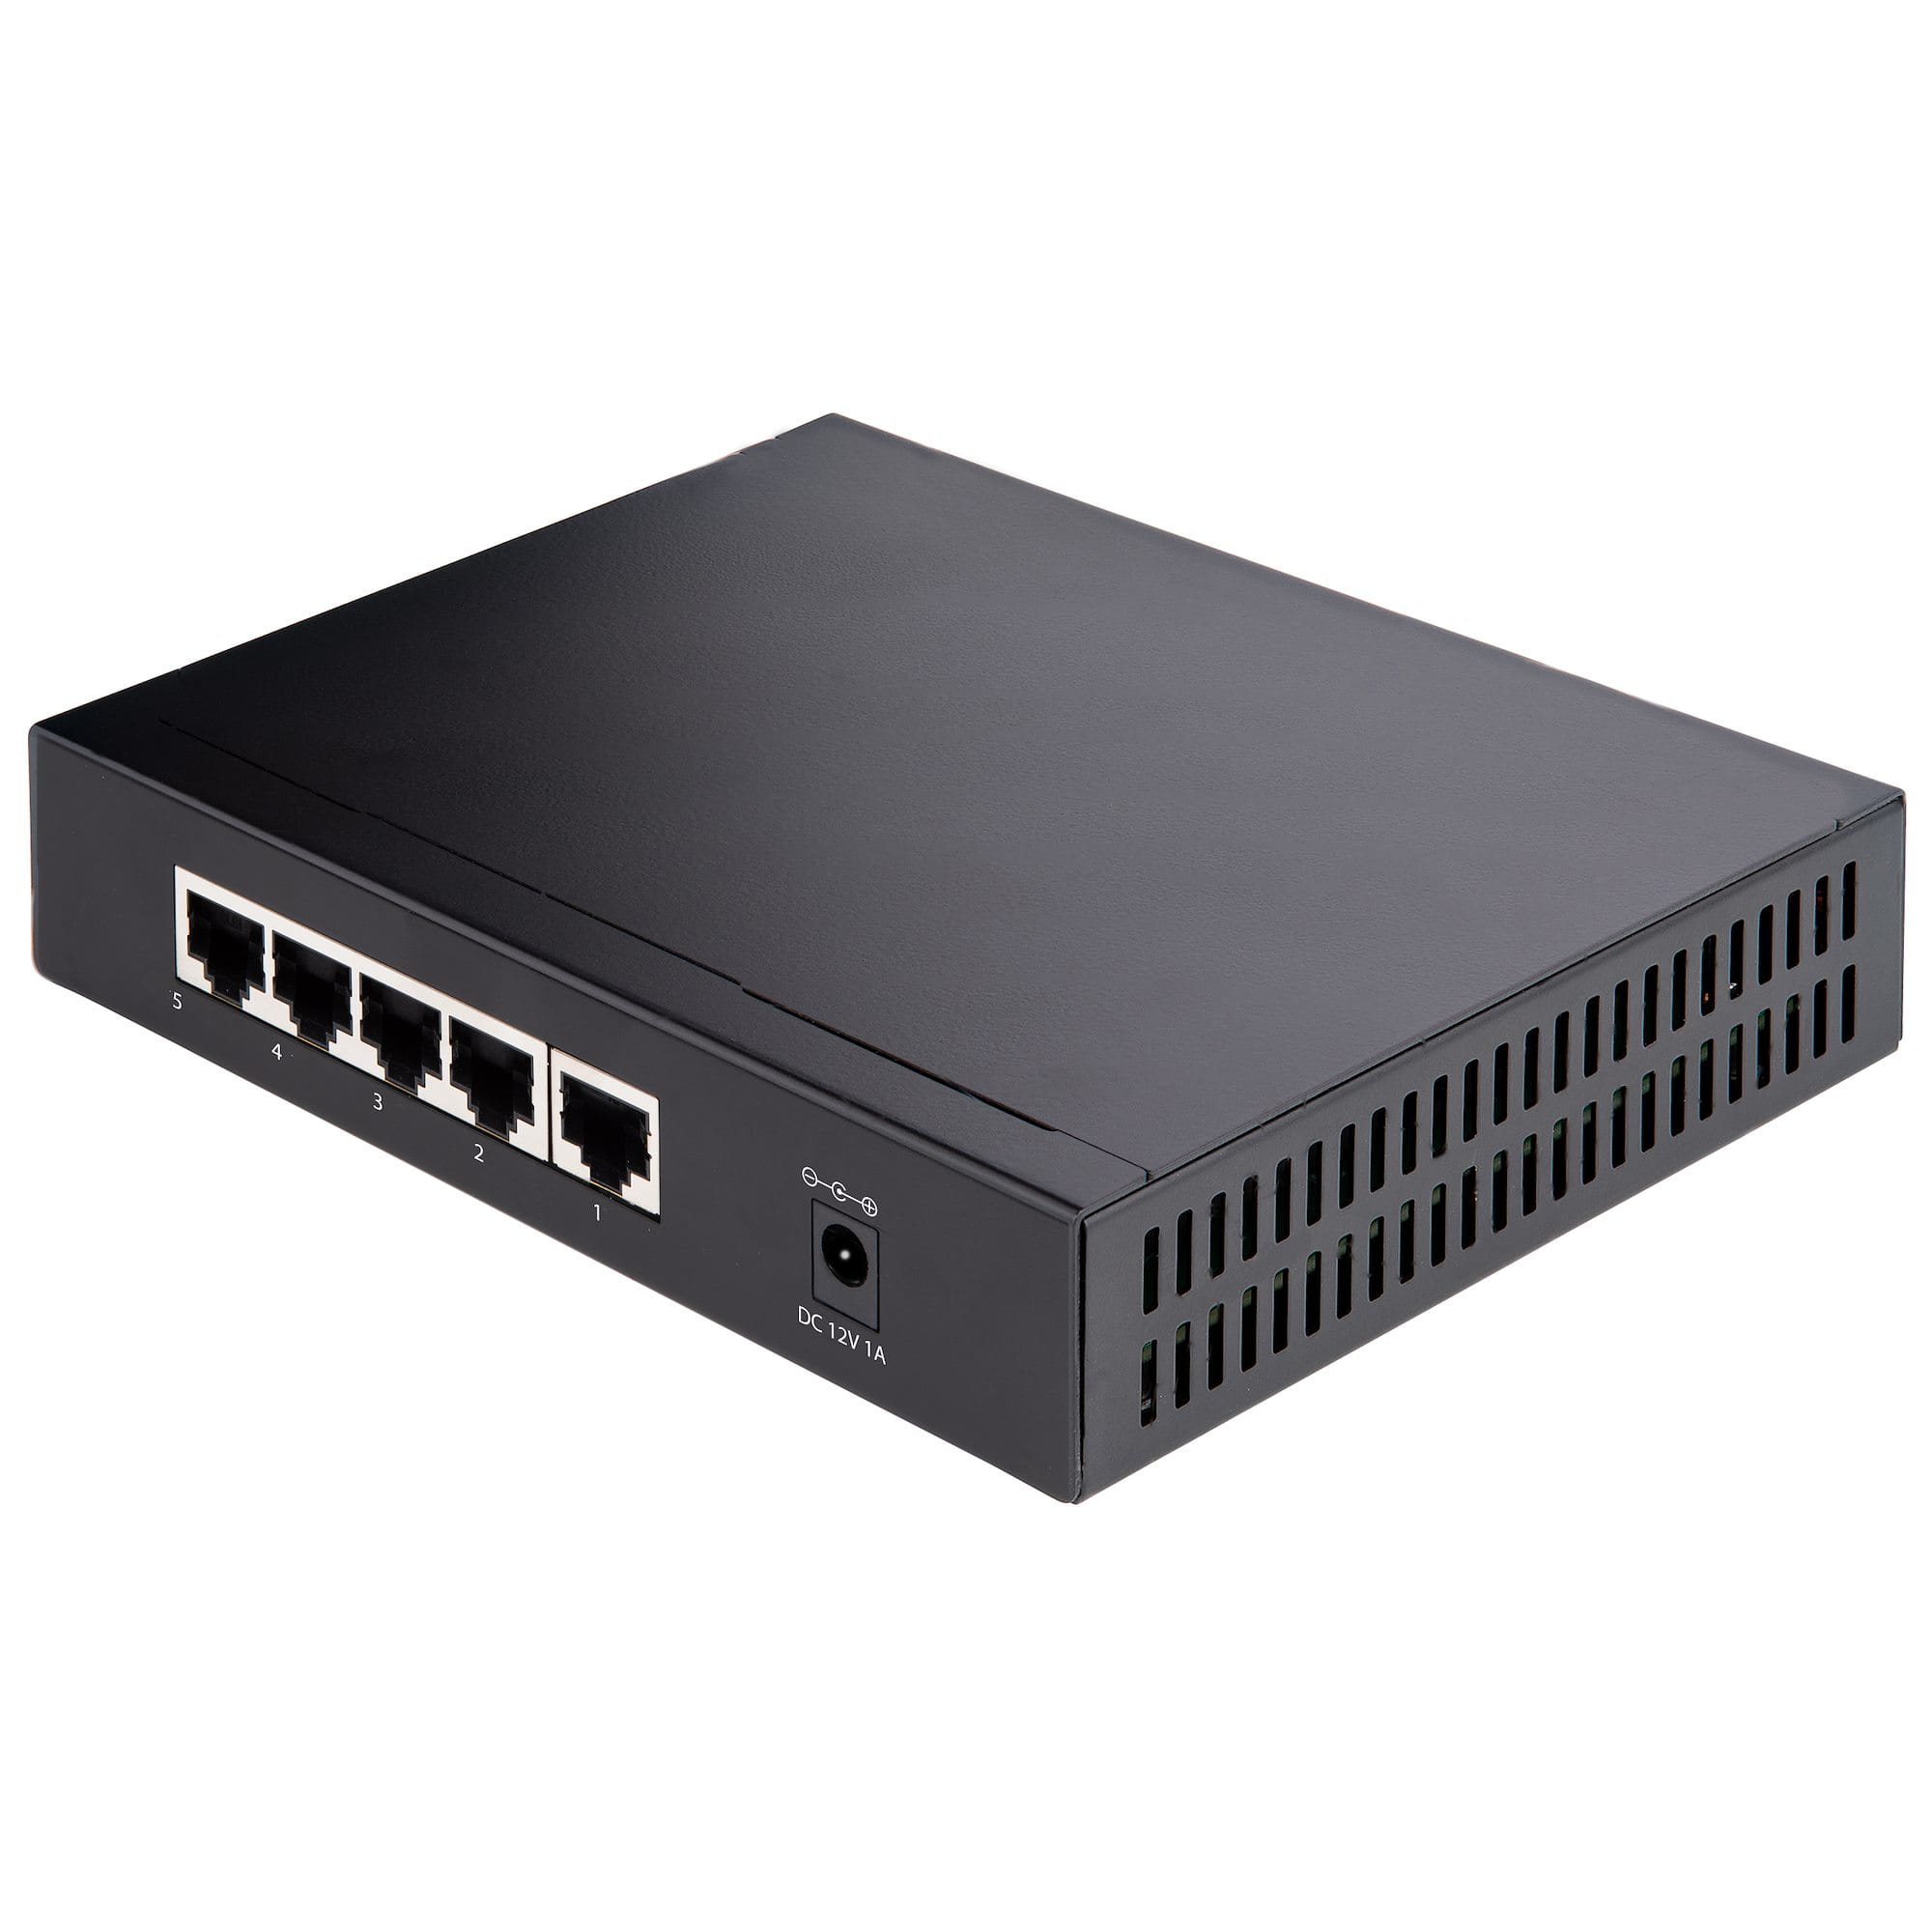 StarTech.com 5 Port Gigabit Switch - Unverwalteter 2.5Gbit/s Switch - Office-/Heimnetzwerk/Lan Switch/Verteiler für Tisch/Wandmontage - Rückwärtskompatibel mit 10/100/1000Mbit/s - Ganzmetall (DS52000)